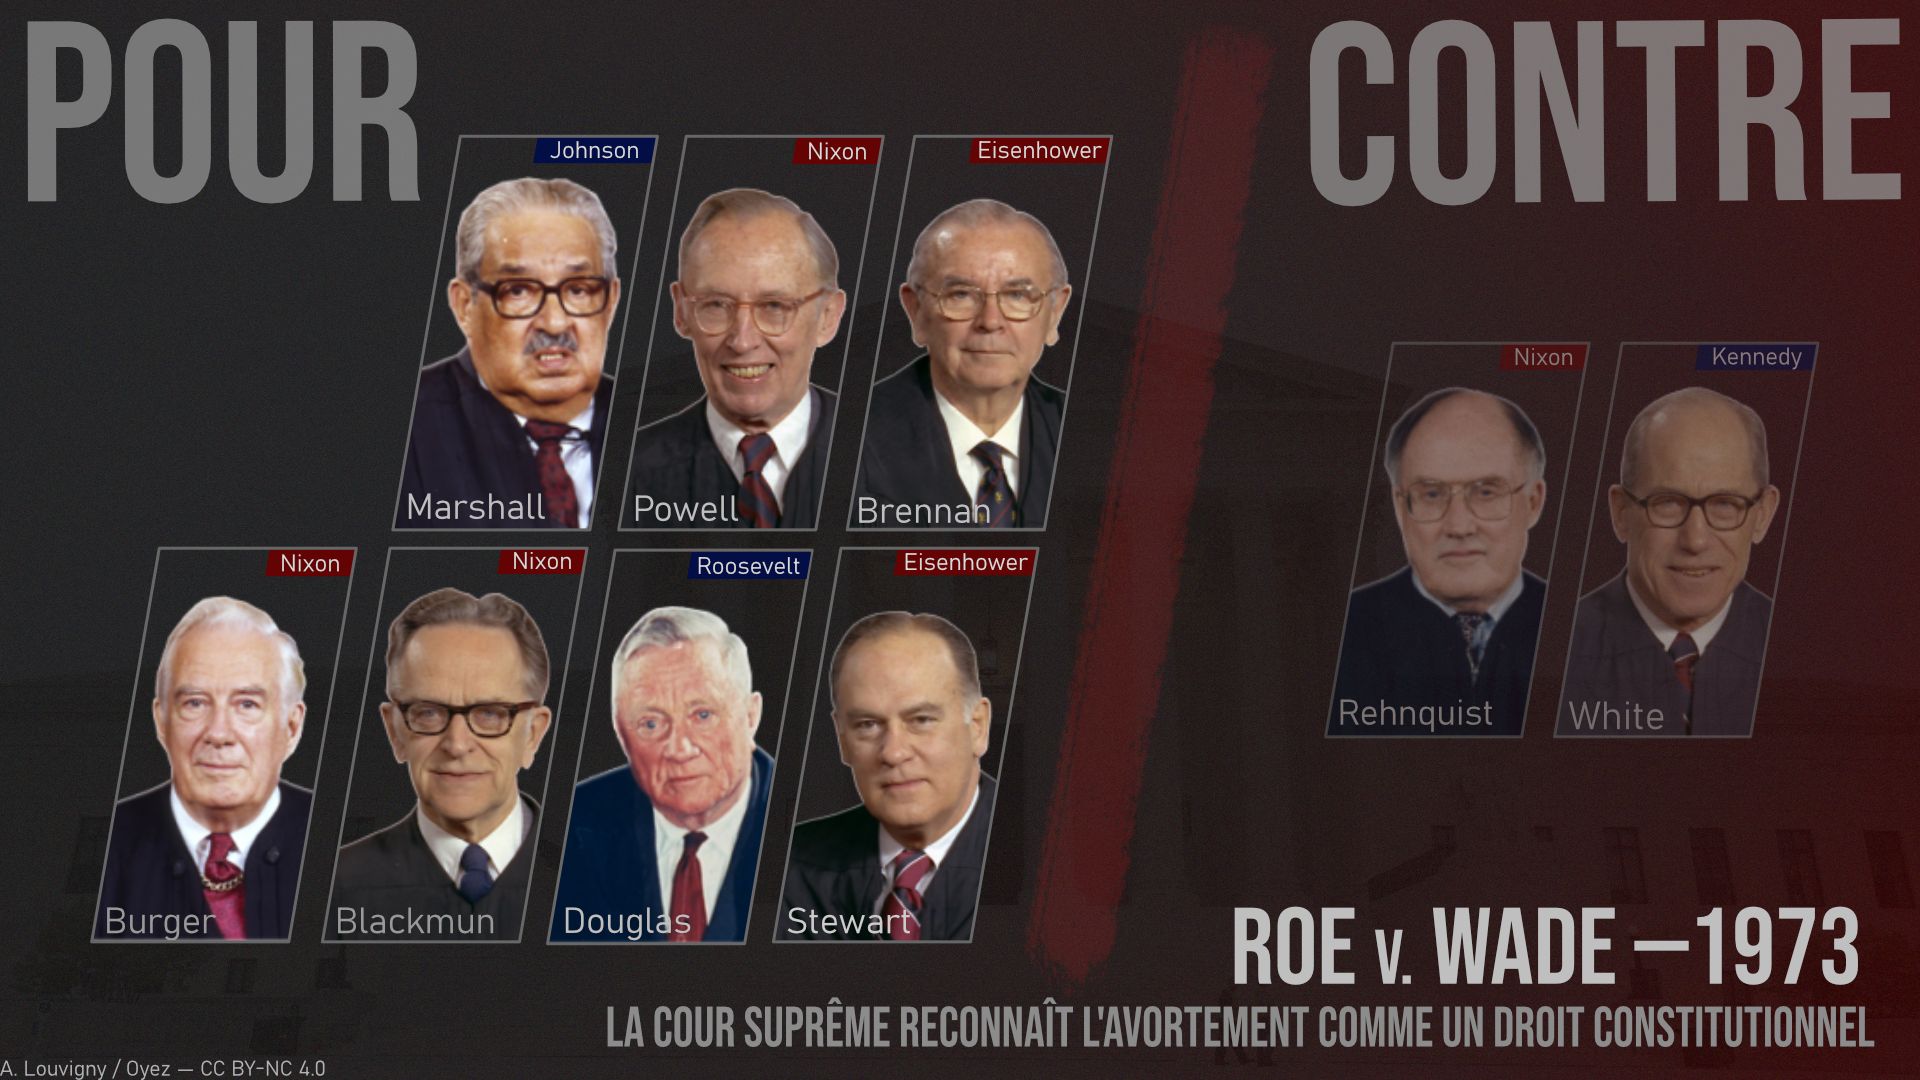 Résultat de la décision de la Cour suprême dans "Roe v. Wade" (1973). Pour chaque juge, le président qui l’a nommé, et sa couleur politique : rouge = républicain ; bleu = démocrate.